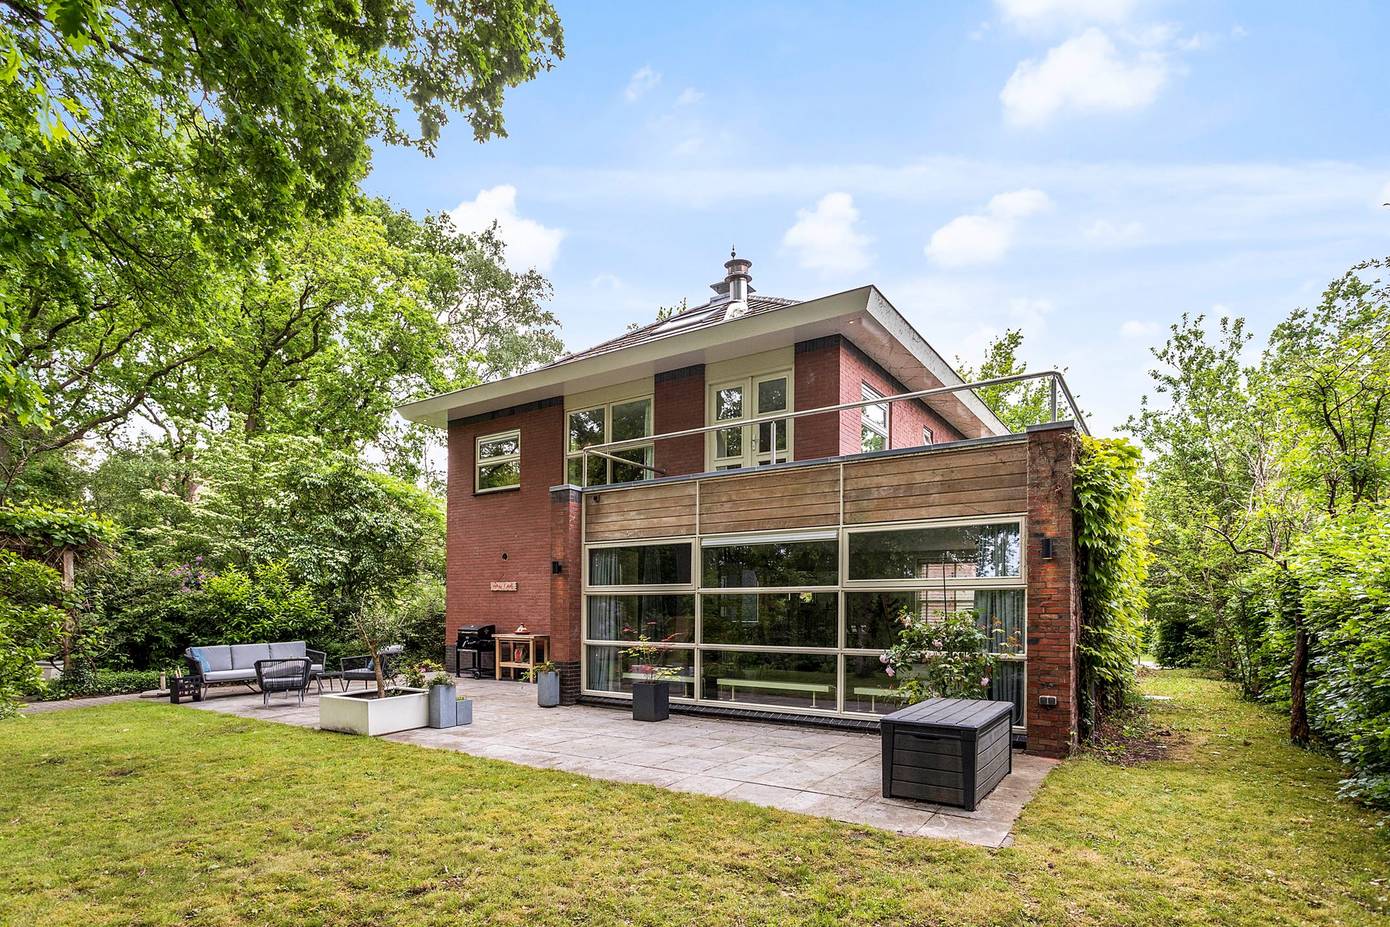 Te koop in Assen: groot herenhuis met vier verdiepingen in villawijk Houtlaan